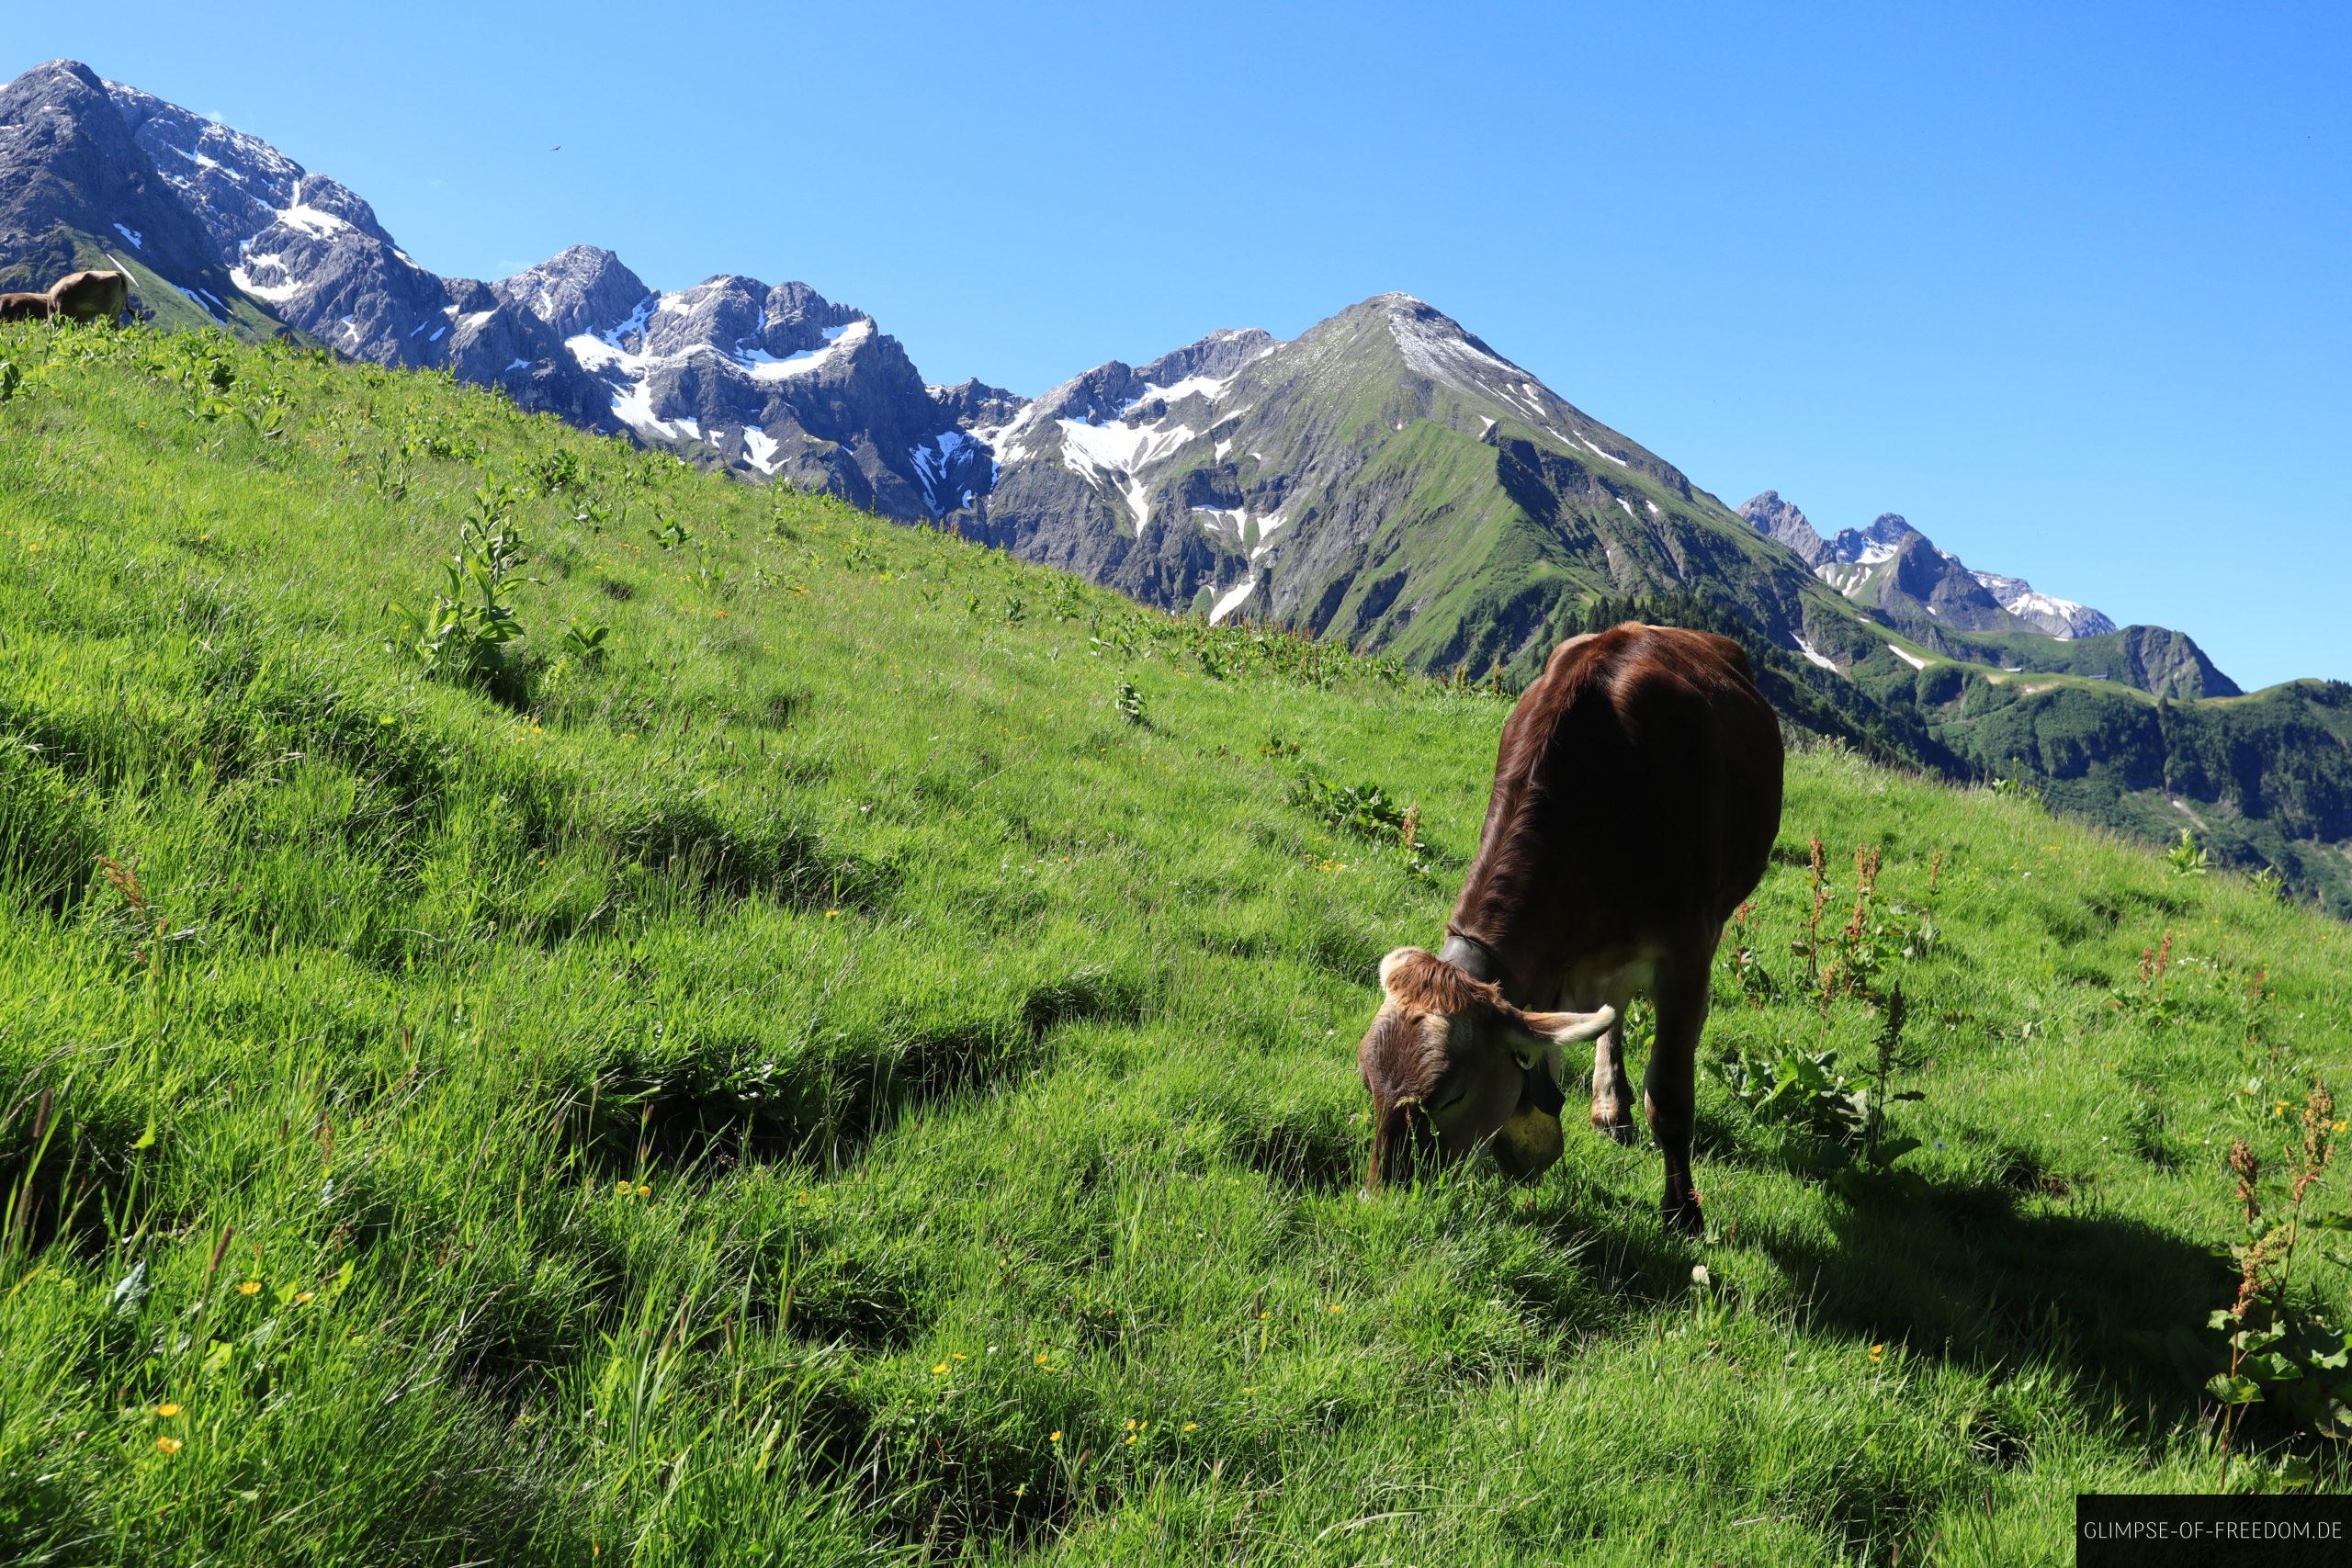 Kuh weidet auf dem Einödsberg